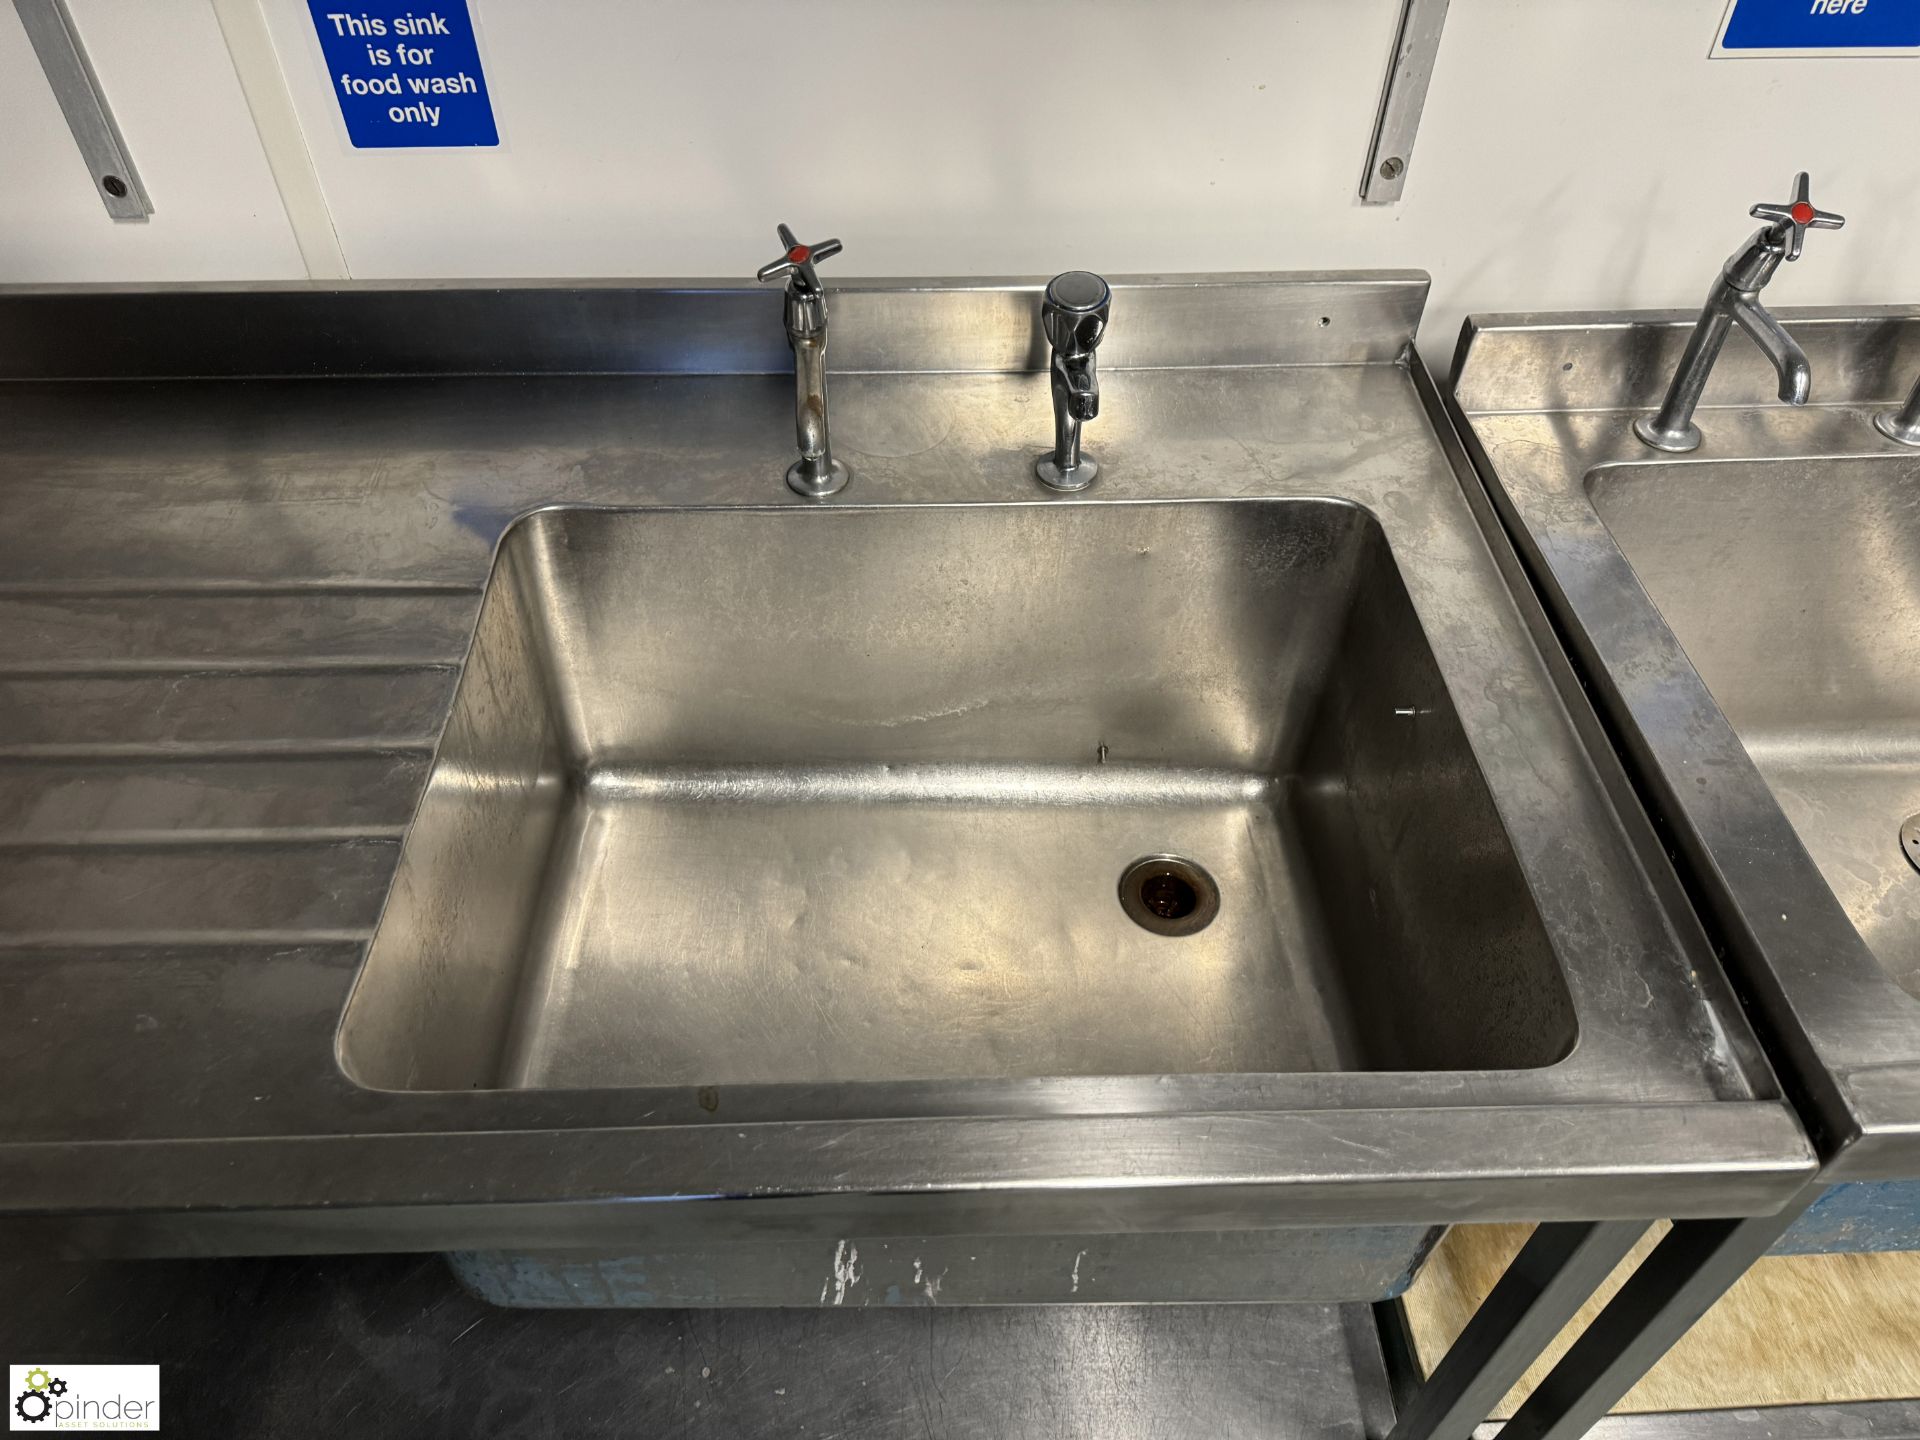 Stainless steel single bowl Sink, 1500mm x 700mm x 880mm (location in building - level 23 kitchen) - Bild 3 aus 4